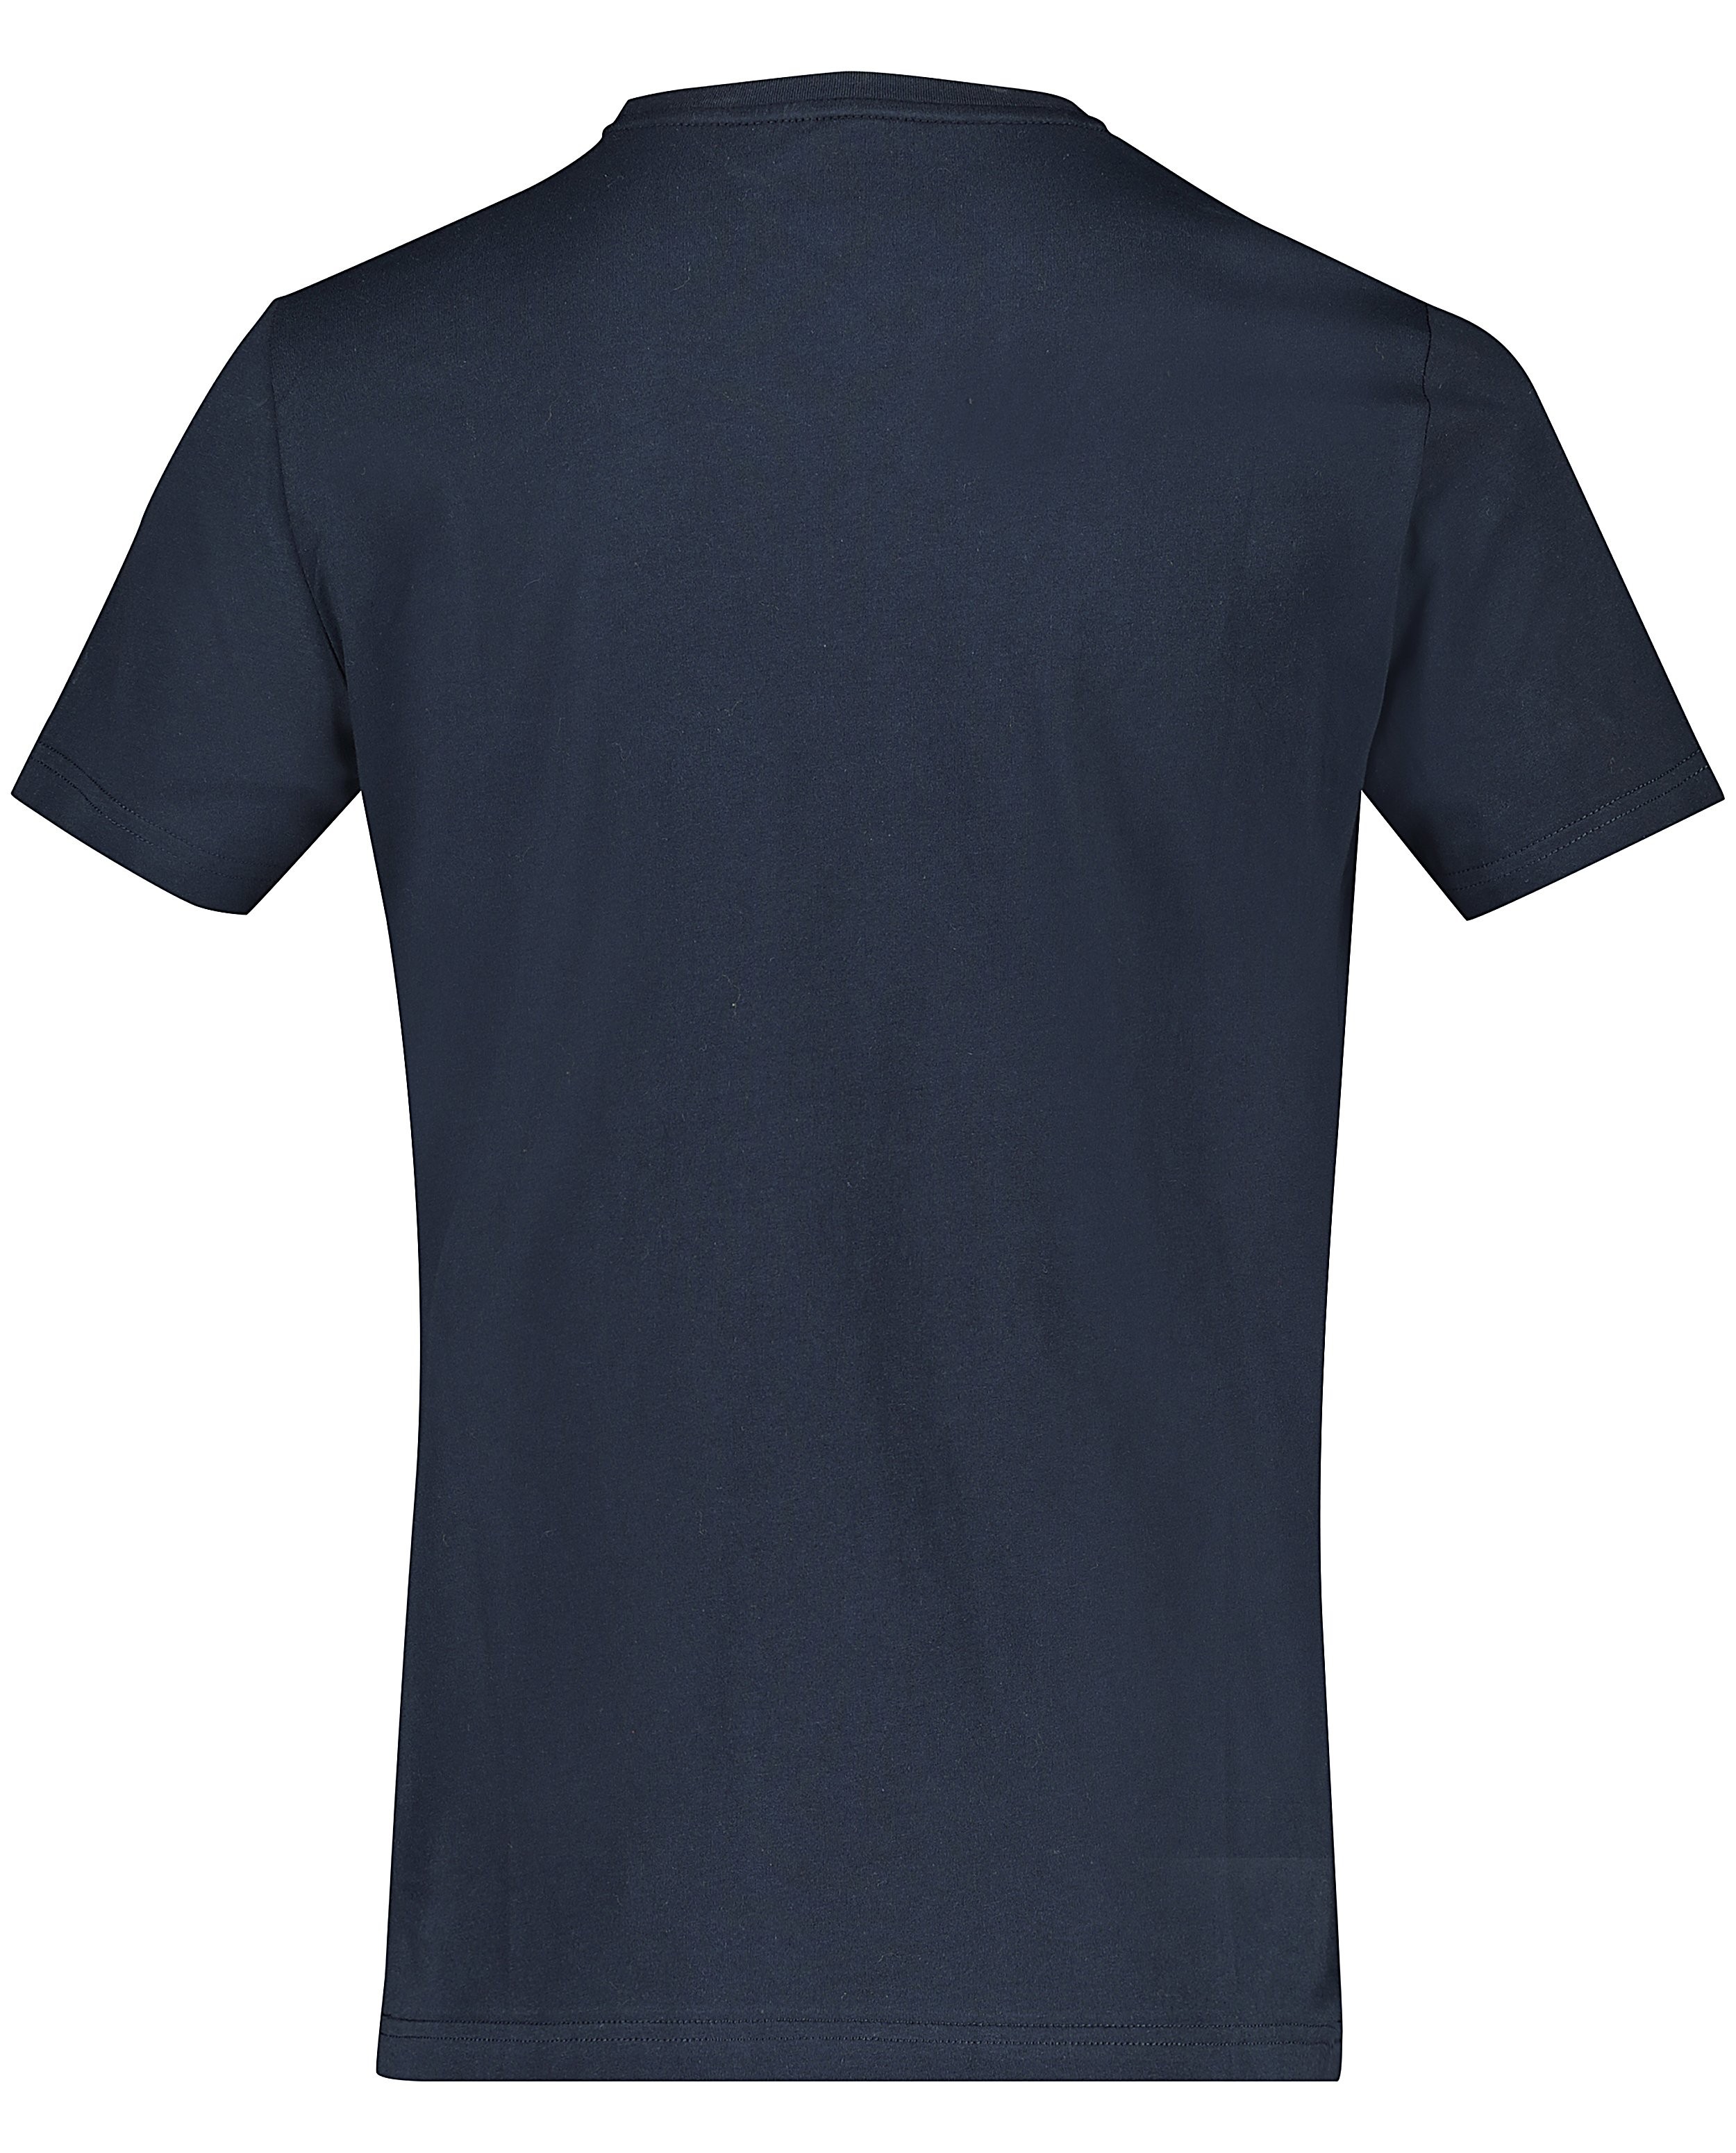 T-shirts - T-shirt bleu foncé à inscription